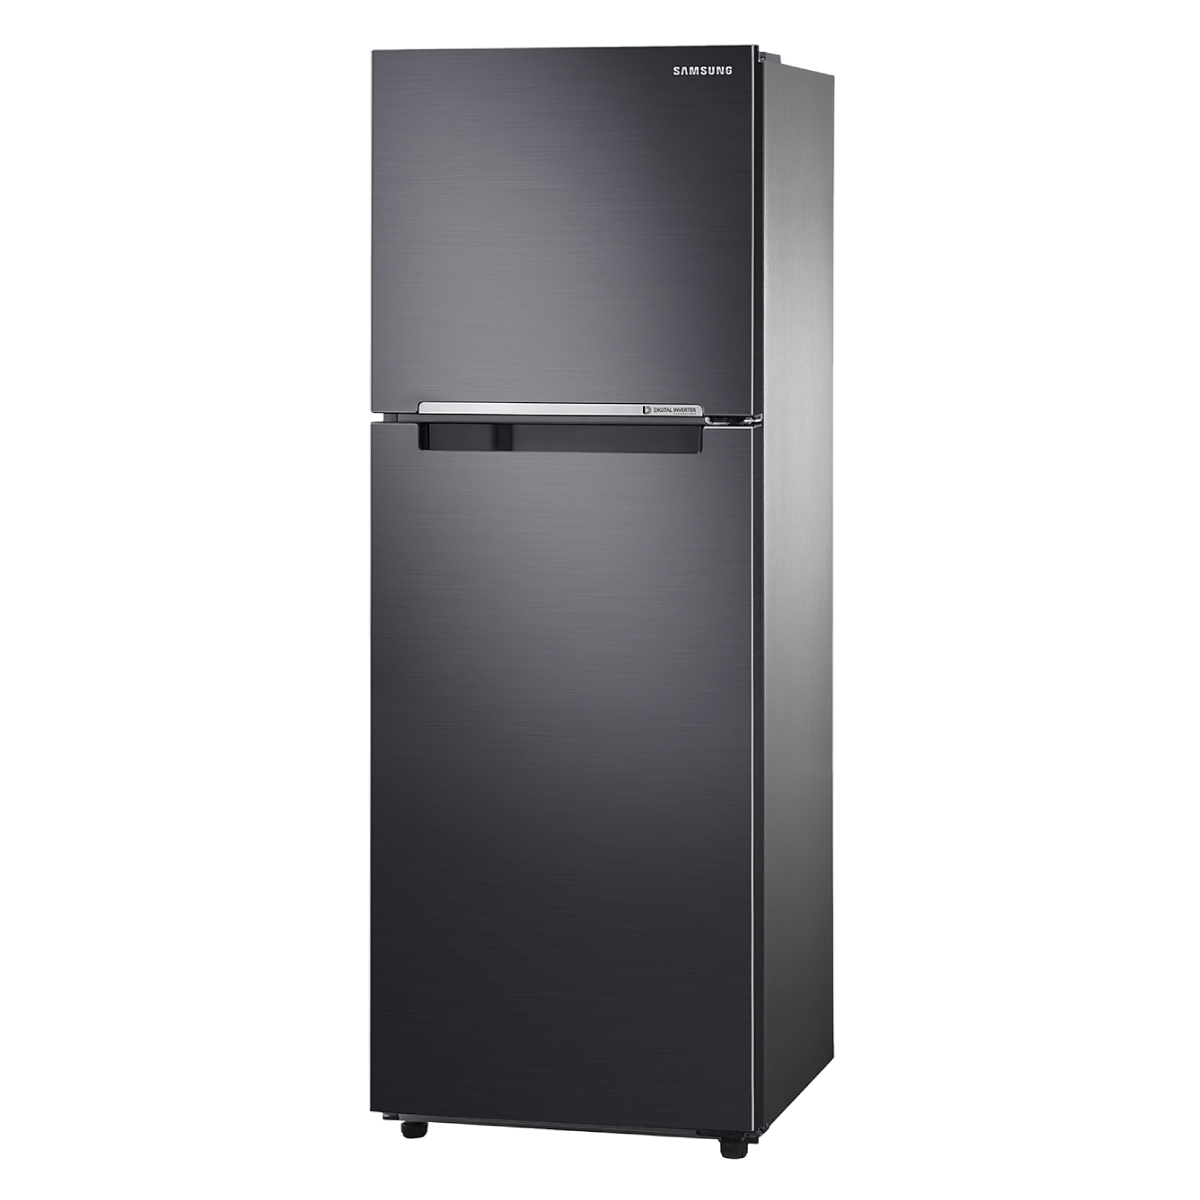 ตู้เย็น 2 ประตู SAMSUNG รุ่น RT22FGRADB1/ST ขนาด 8.3 คิว รับประกันสินค้า 5 ปี คอมเพรสเชอร์ 20 ปี